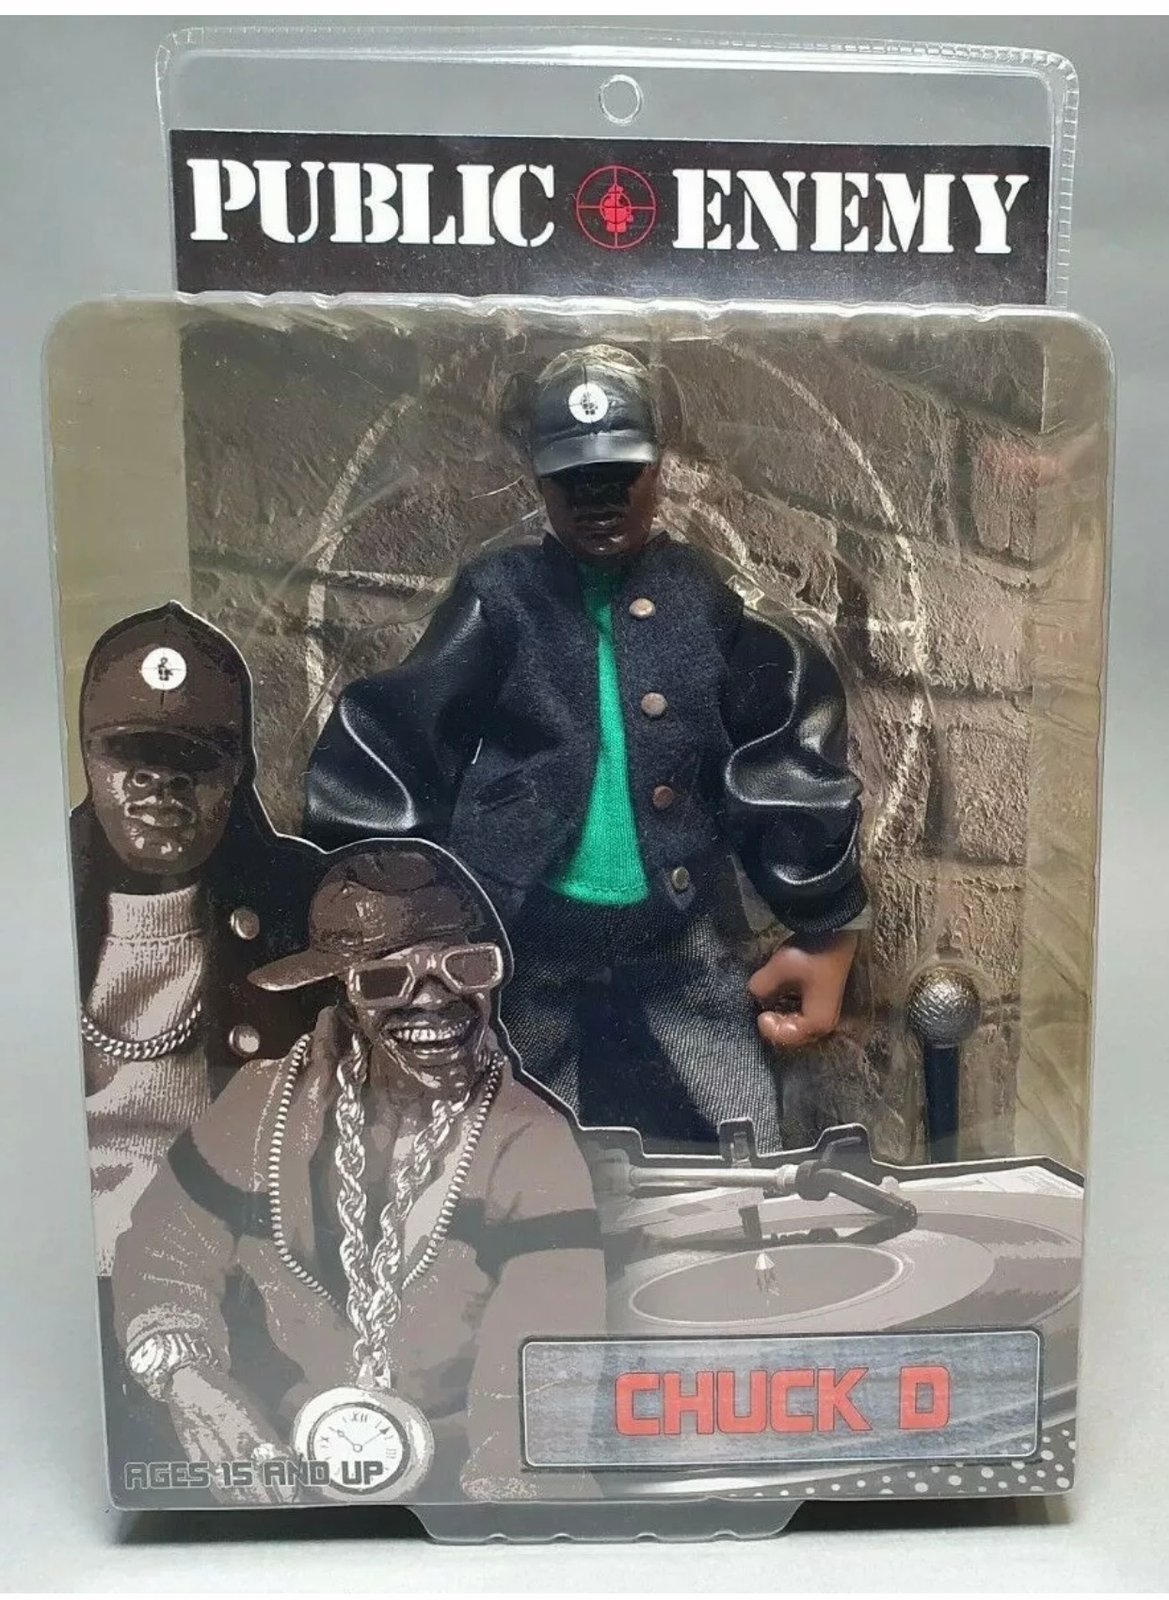 Public Enemy (Flavor Flav & Chuck D) Action Figure set - 2006